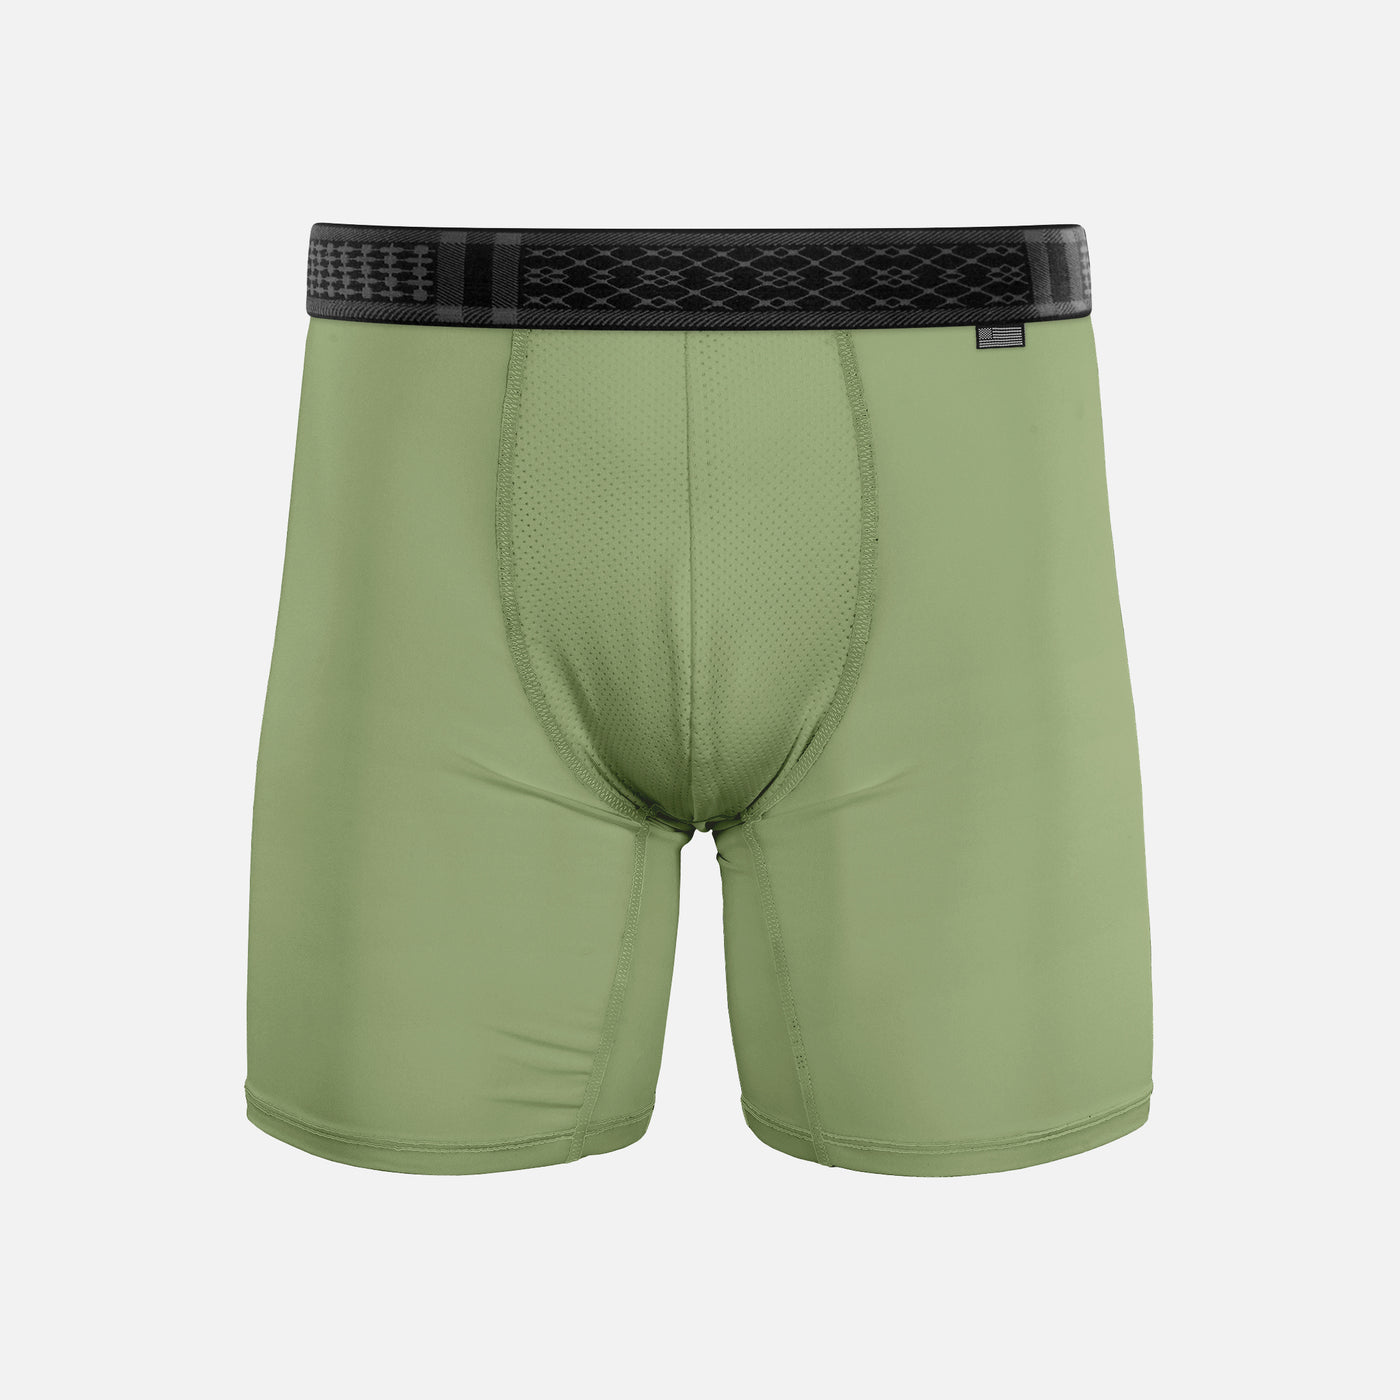 Sage Green Men's Underwear